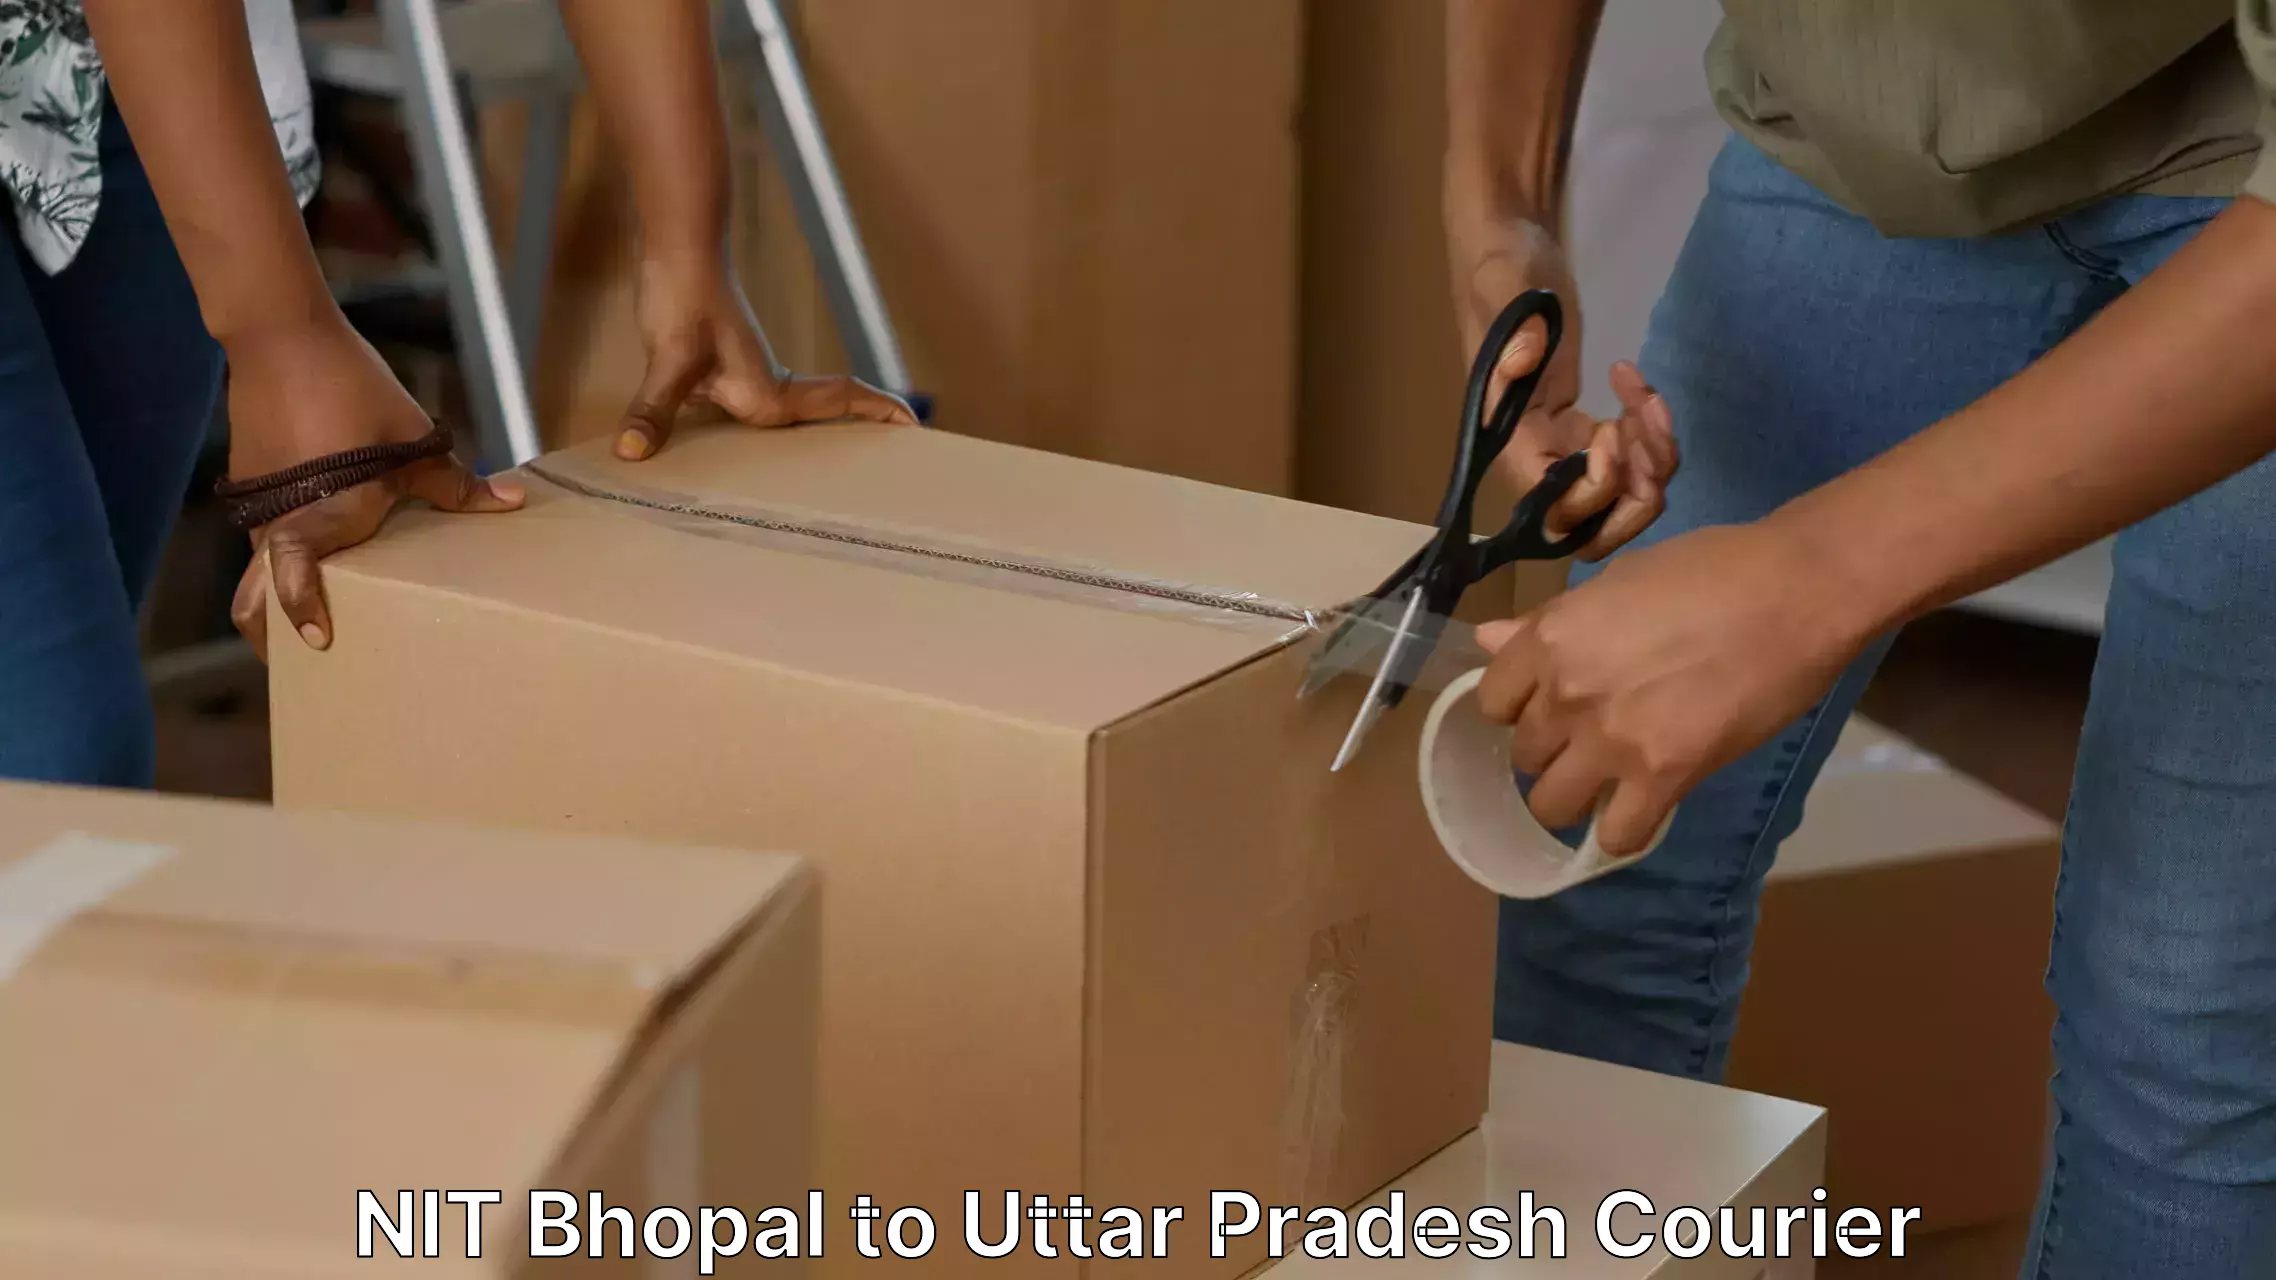 Furniture delivery service NIT Bhopal to Prayagraj